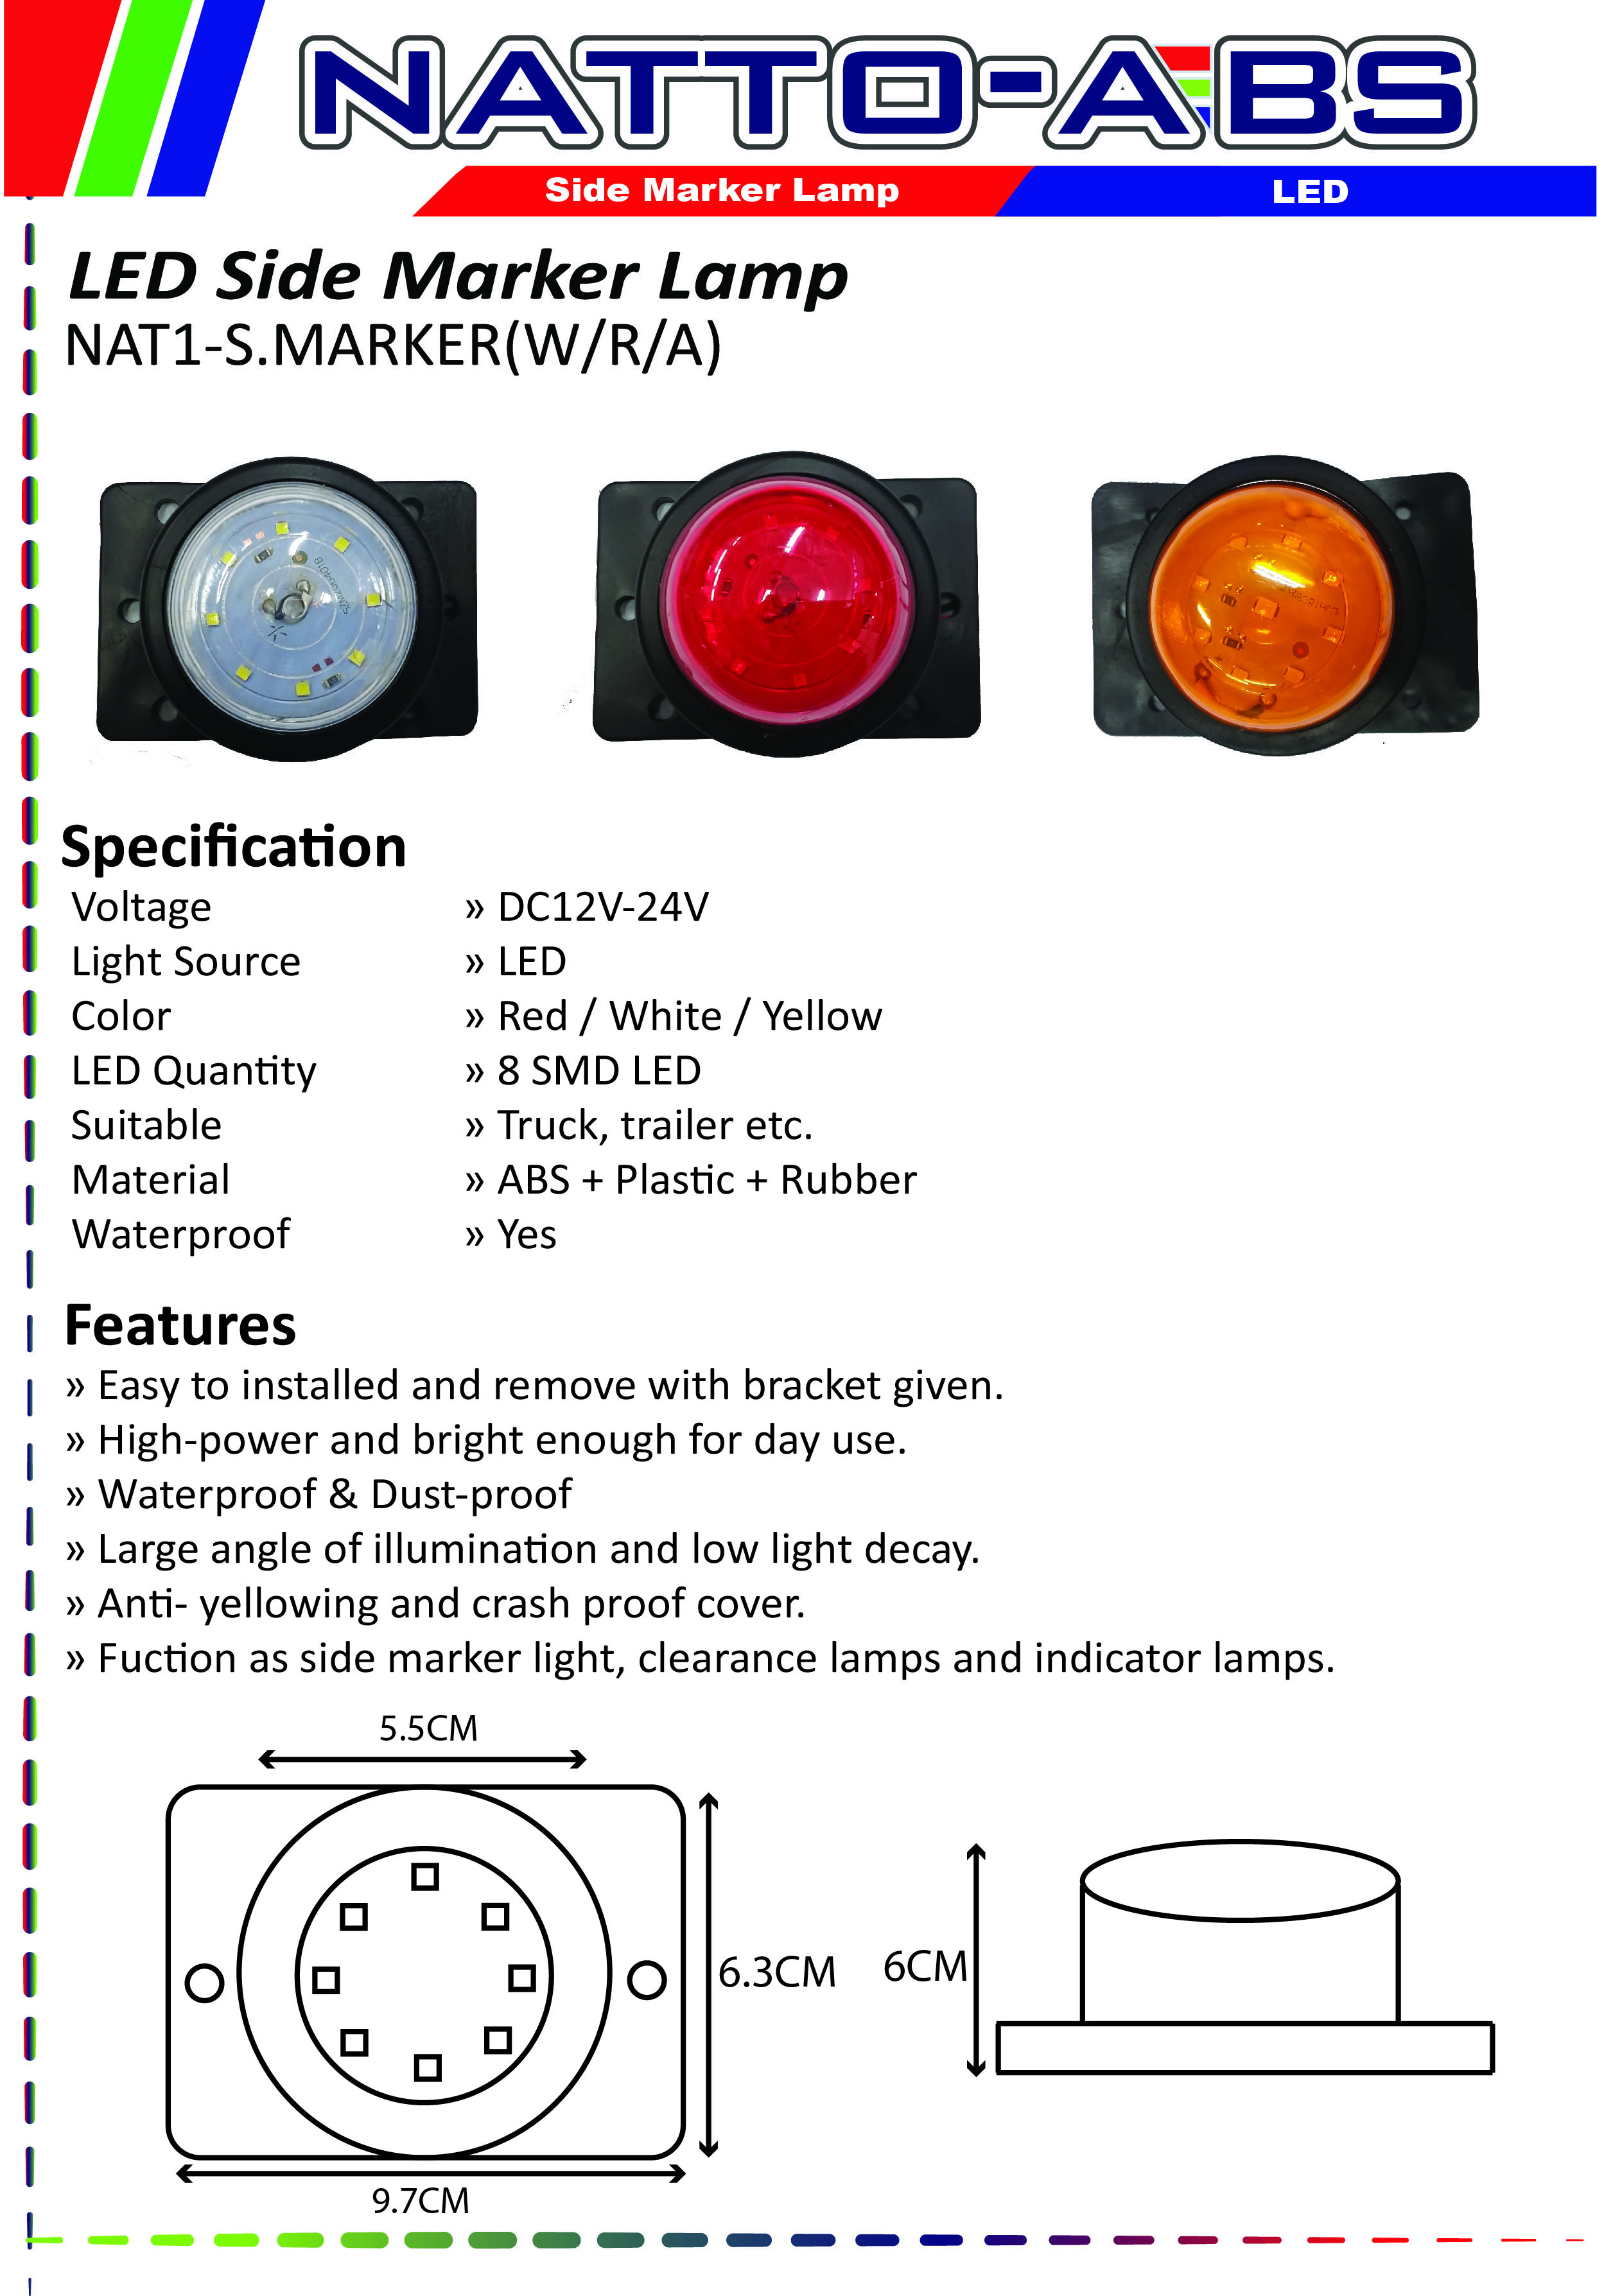 Blinker Light with 2 Battery Blinker Warning Lamps Road Safety Equipment  Selangor, Malaysia, Kuala Lumpur (KL)